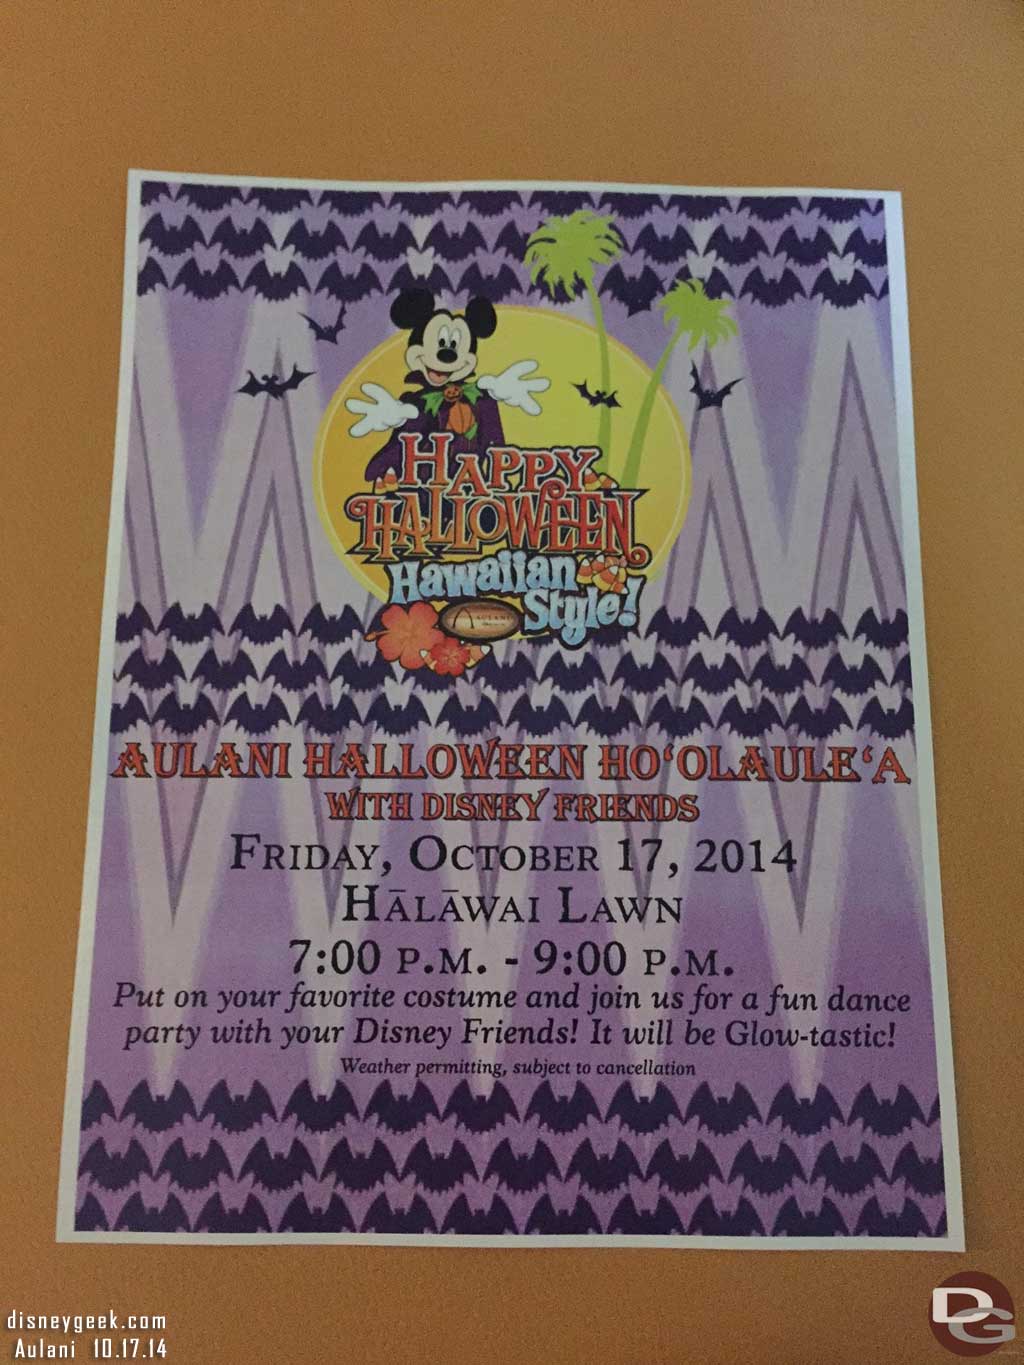 Aulani Halloween Ho'Olaule'A with Disney Friends Flyer